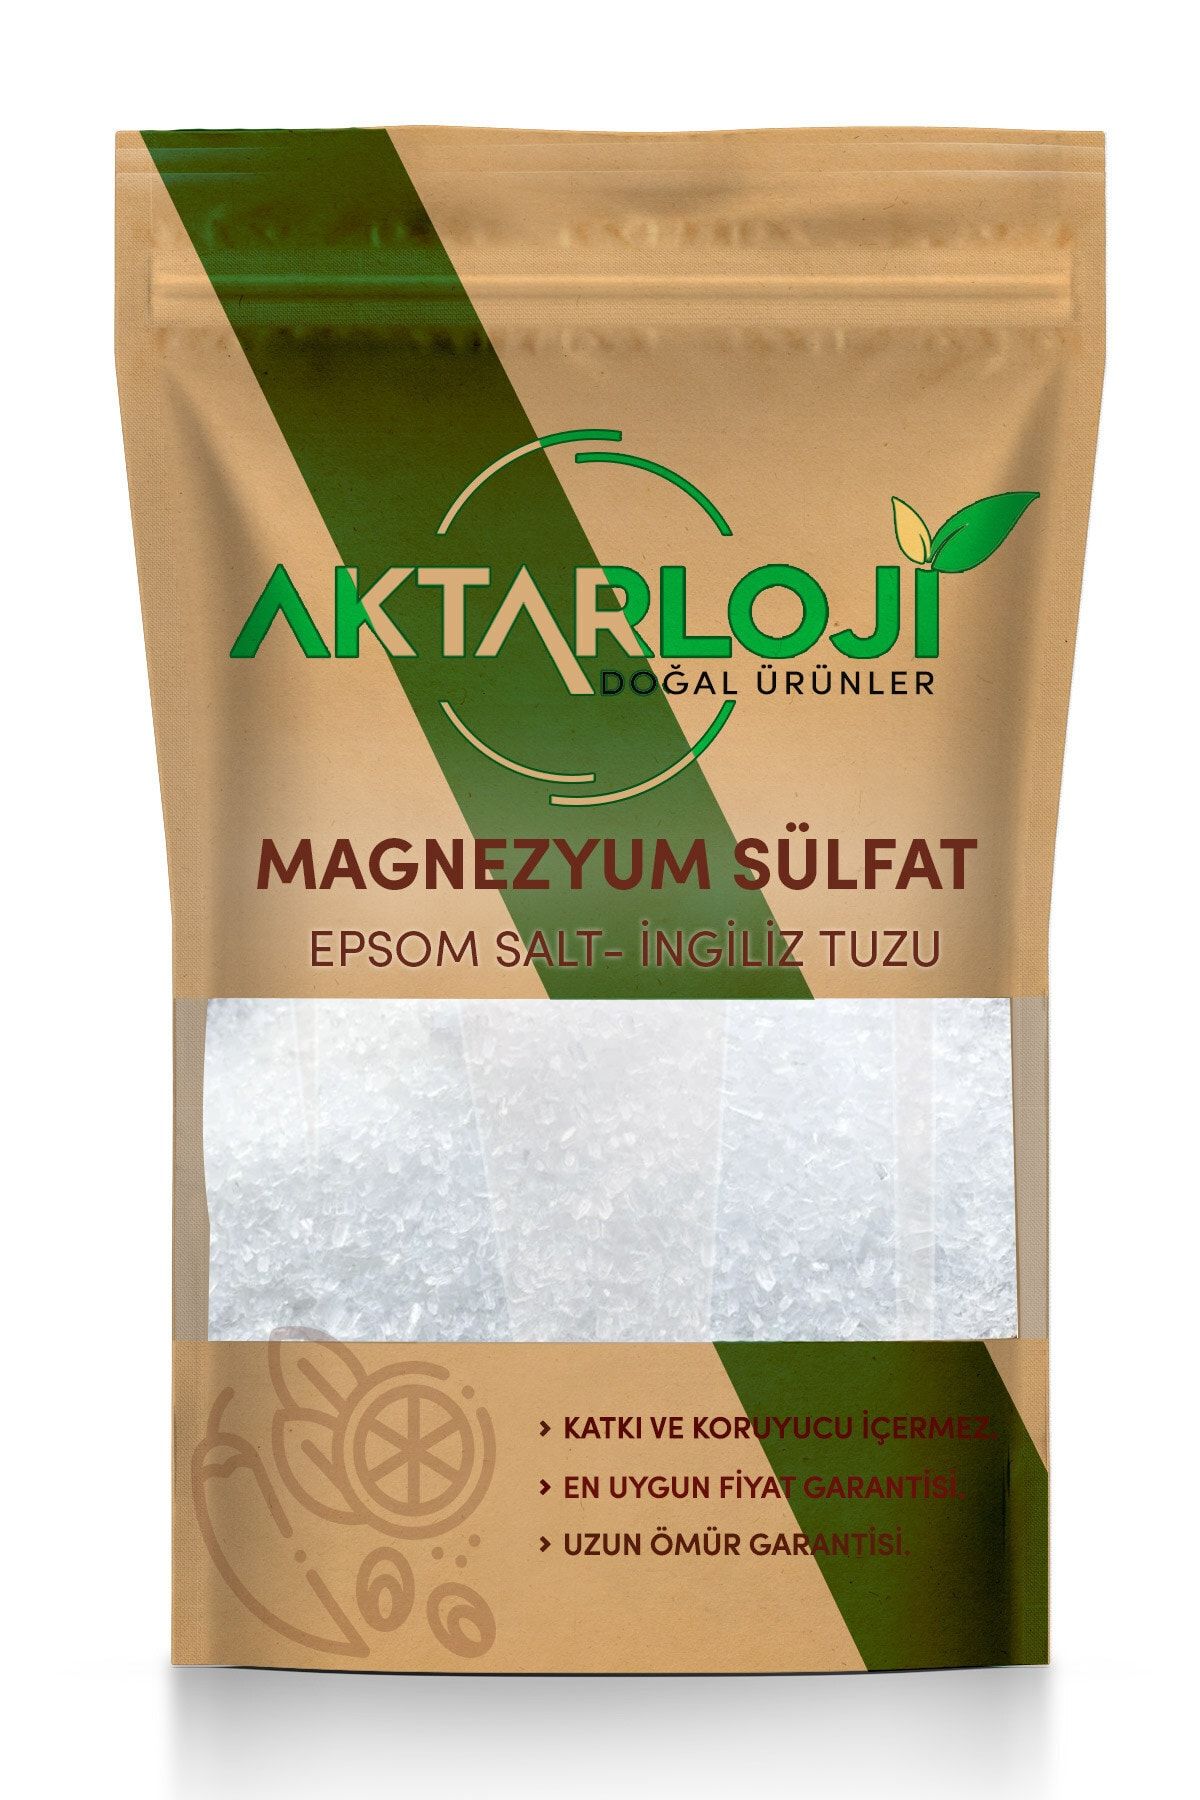 aktarloji 3 kg Magnezyum Sülfat, Ingiliz Tuzu, Epsom Salt (yenilebilir)